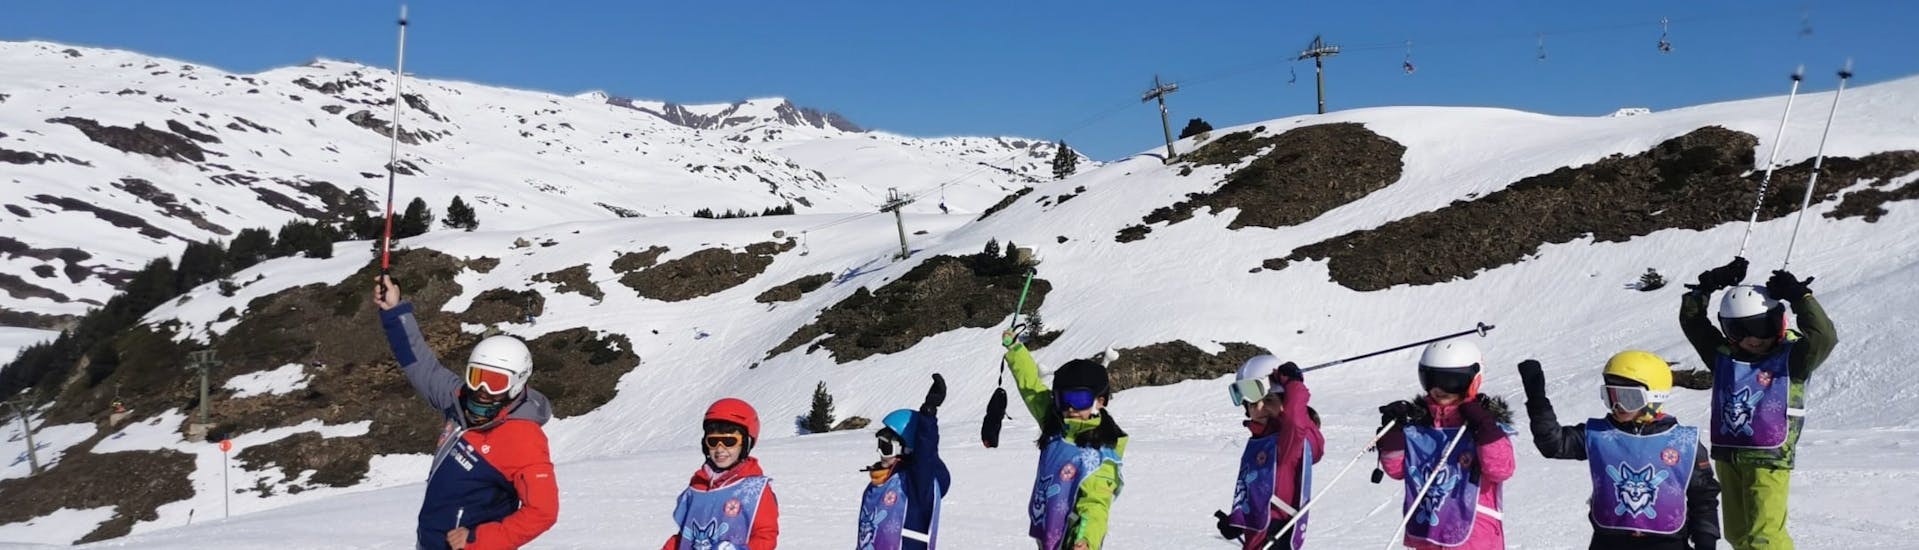 Lezioni di sci per bambini a partire da 4 anni per tutti i livelli.